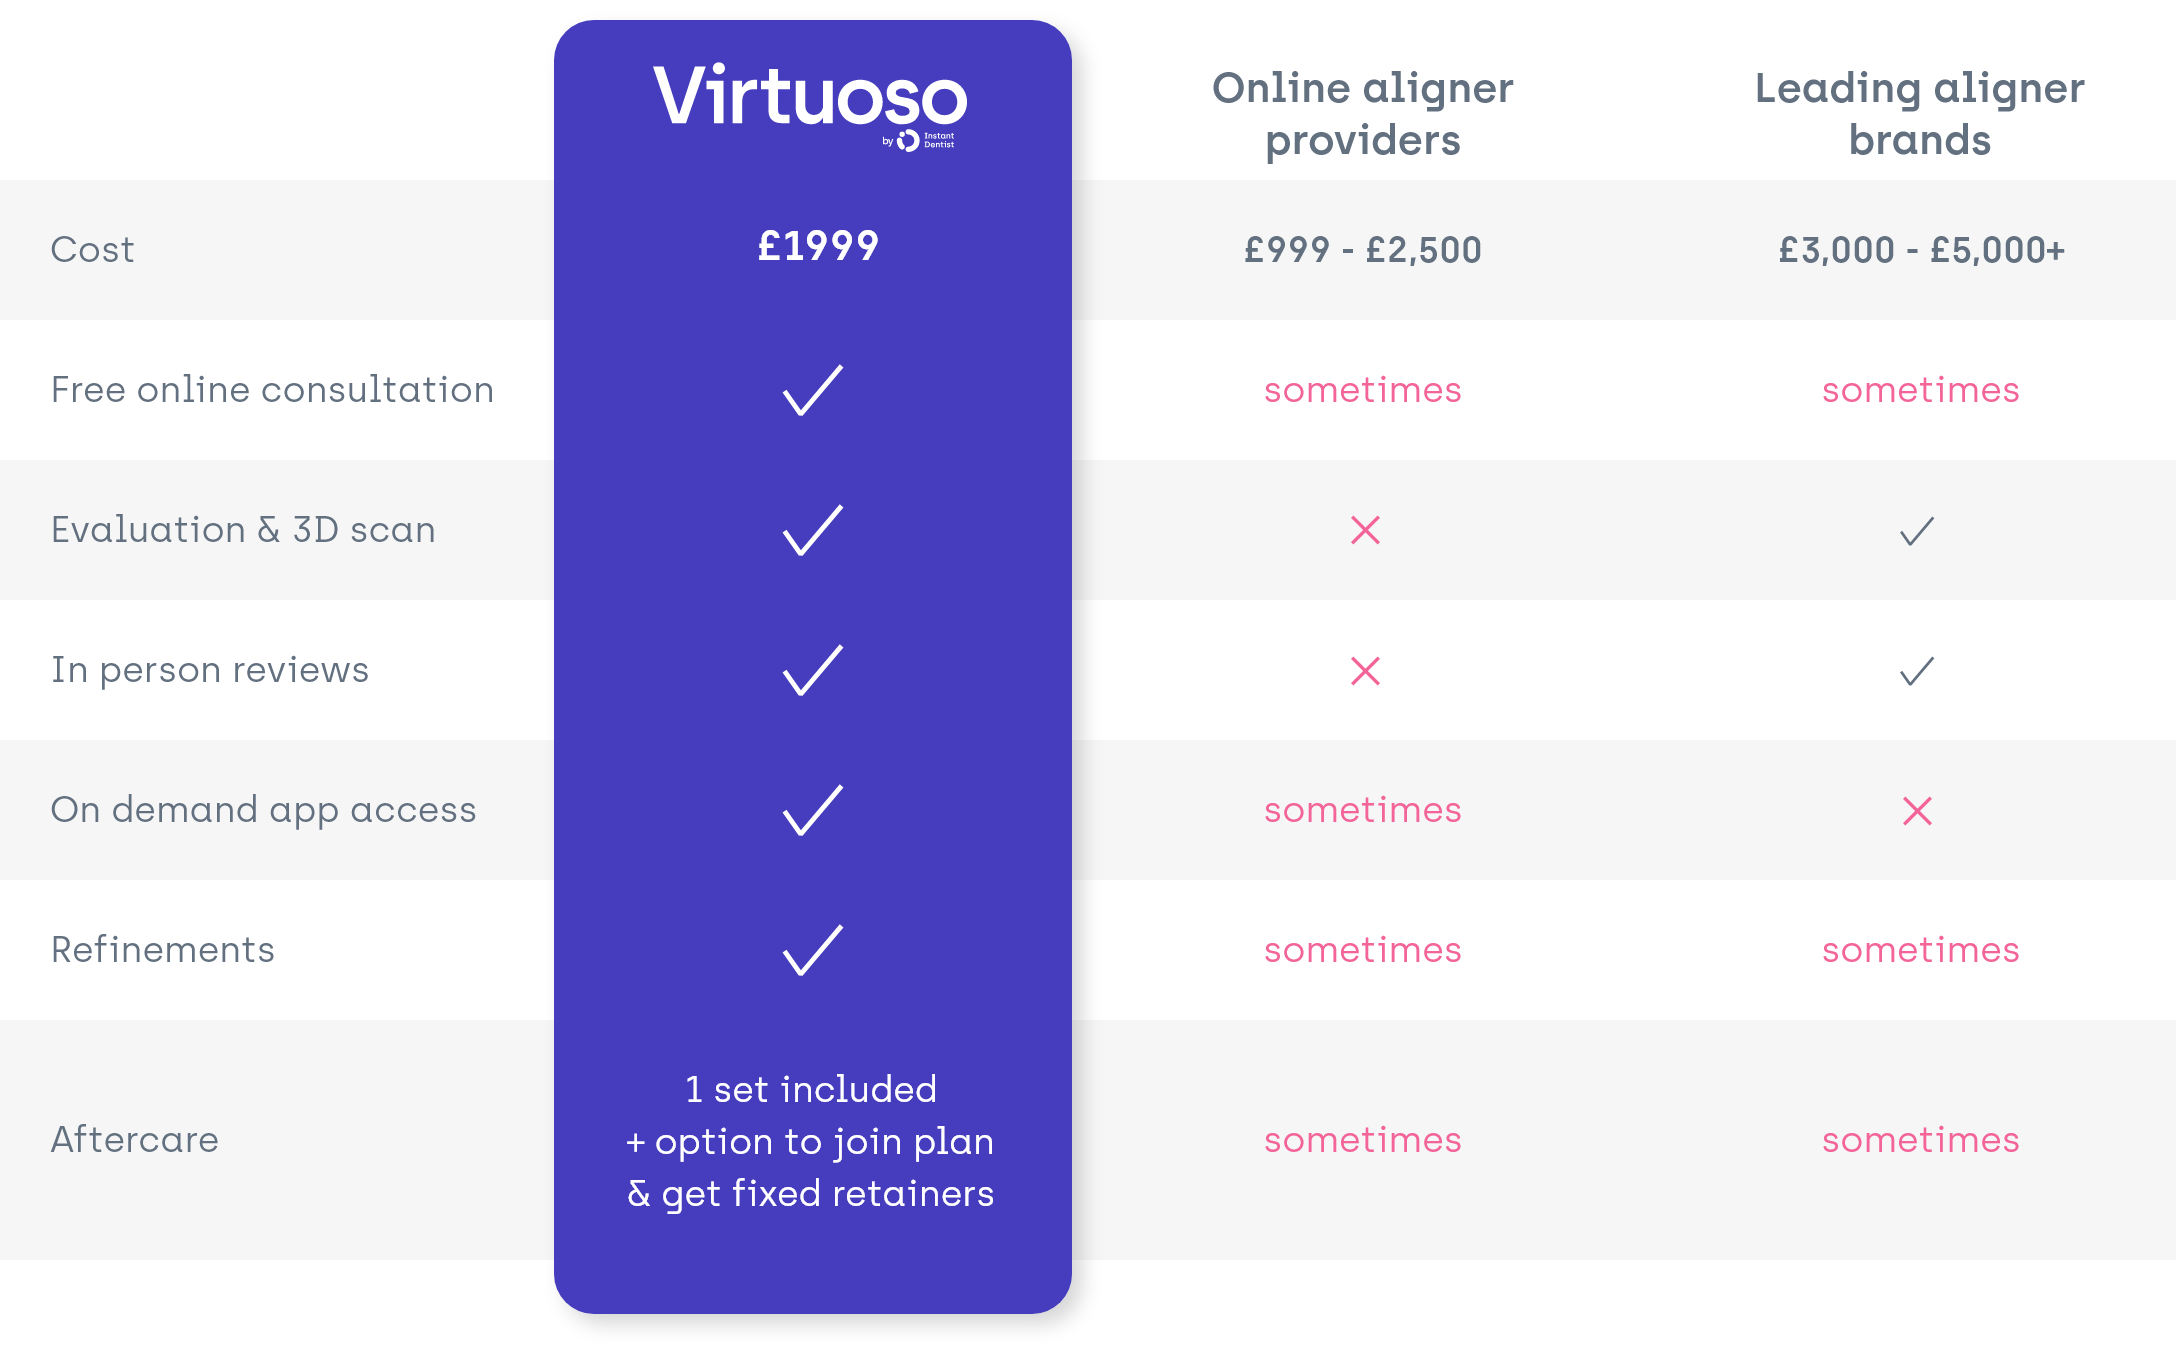 Virtuoso clear aligners price comparison